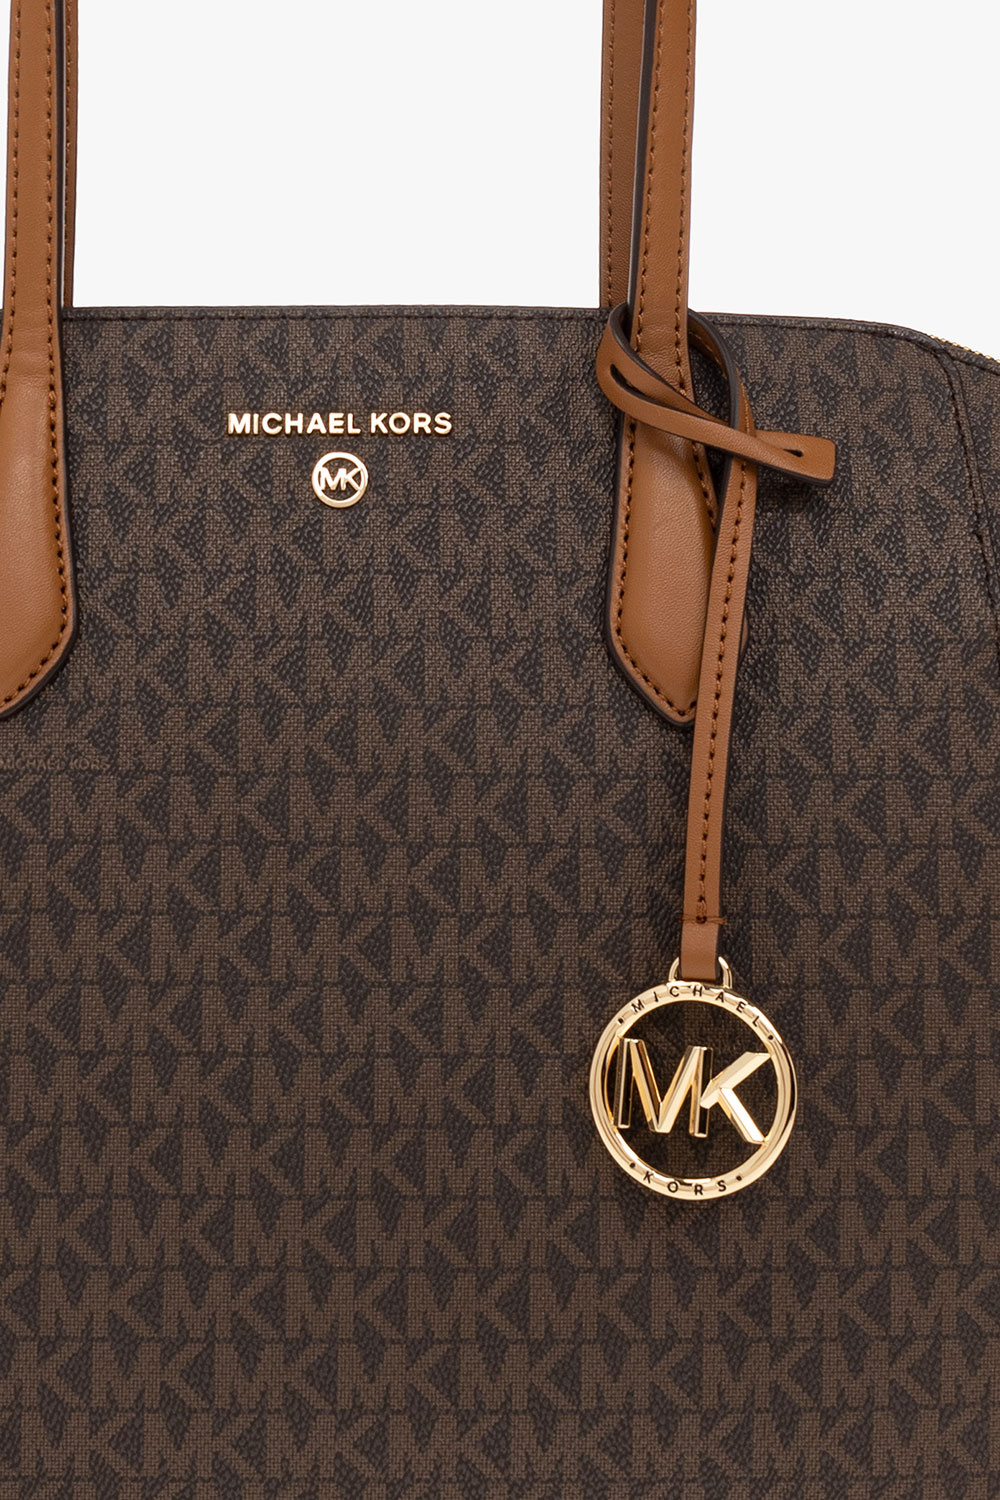 Buy Michael Kors Women Cream All-Over MK Logo Pochette Bag Online